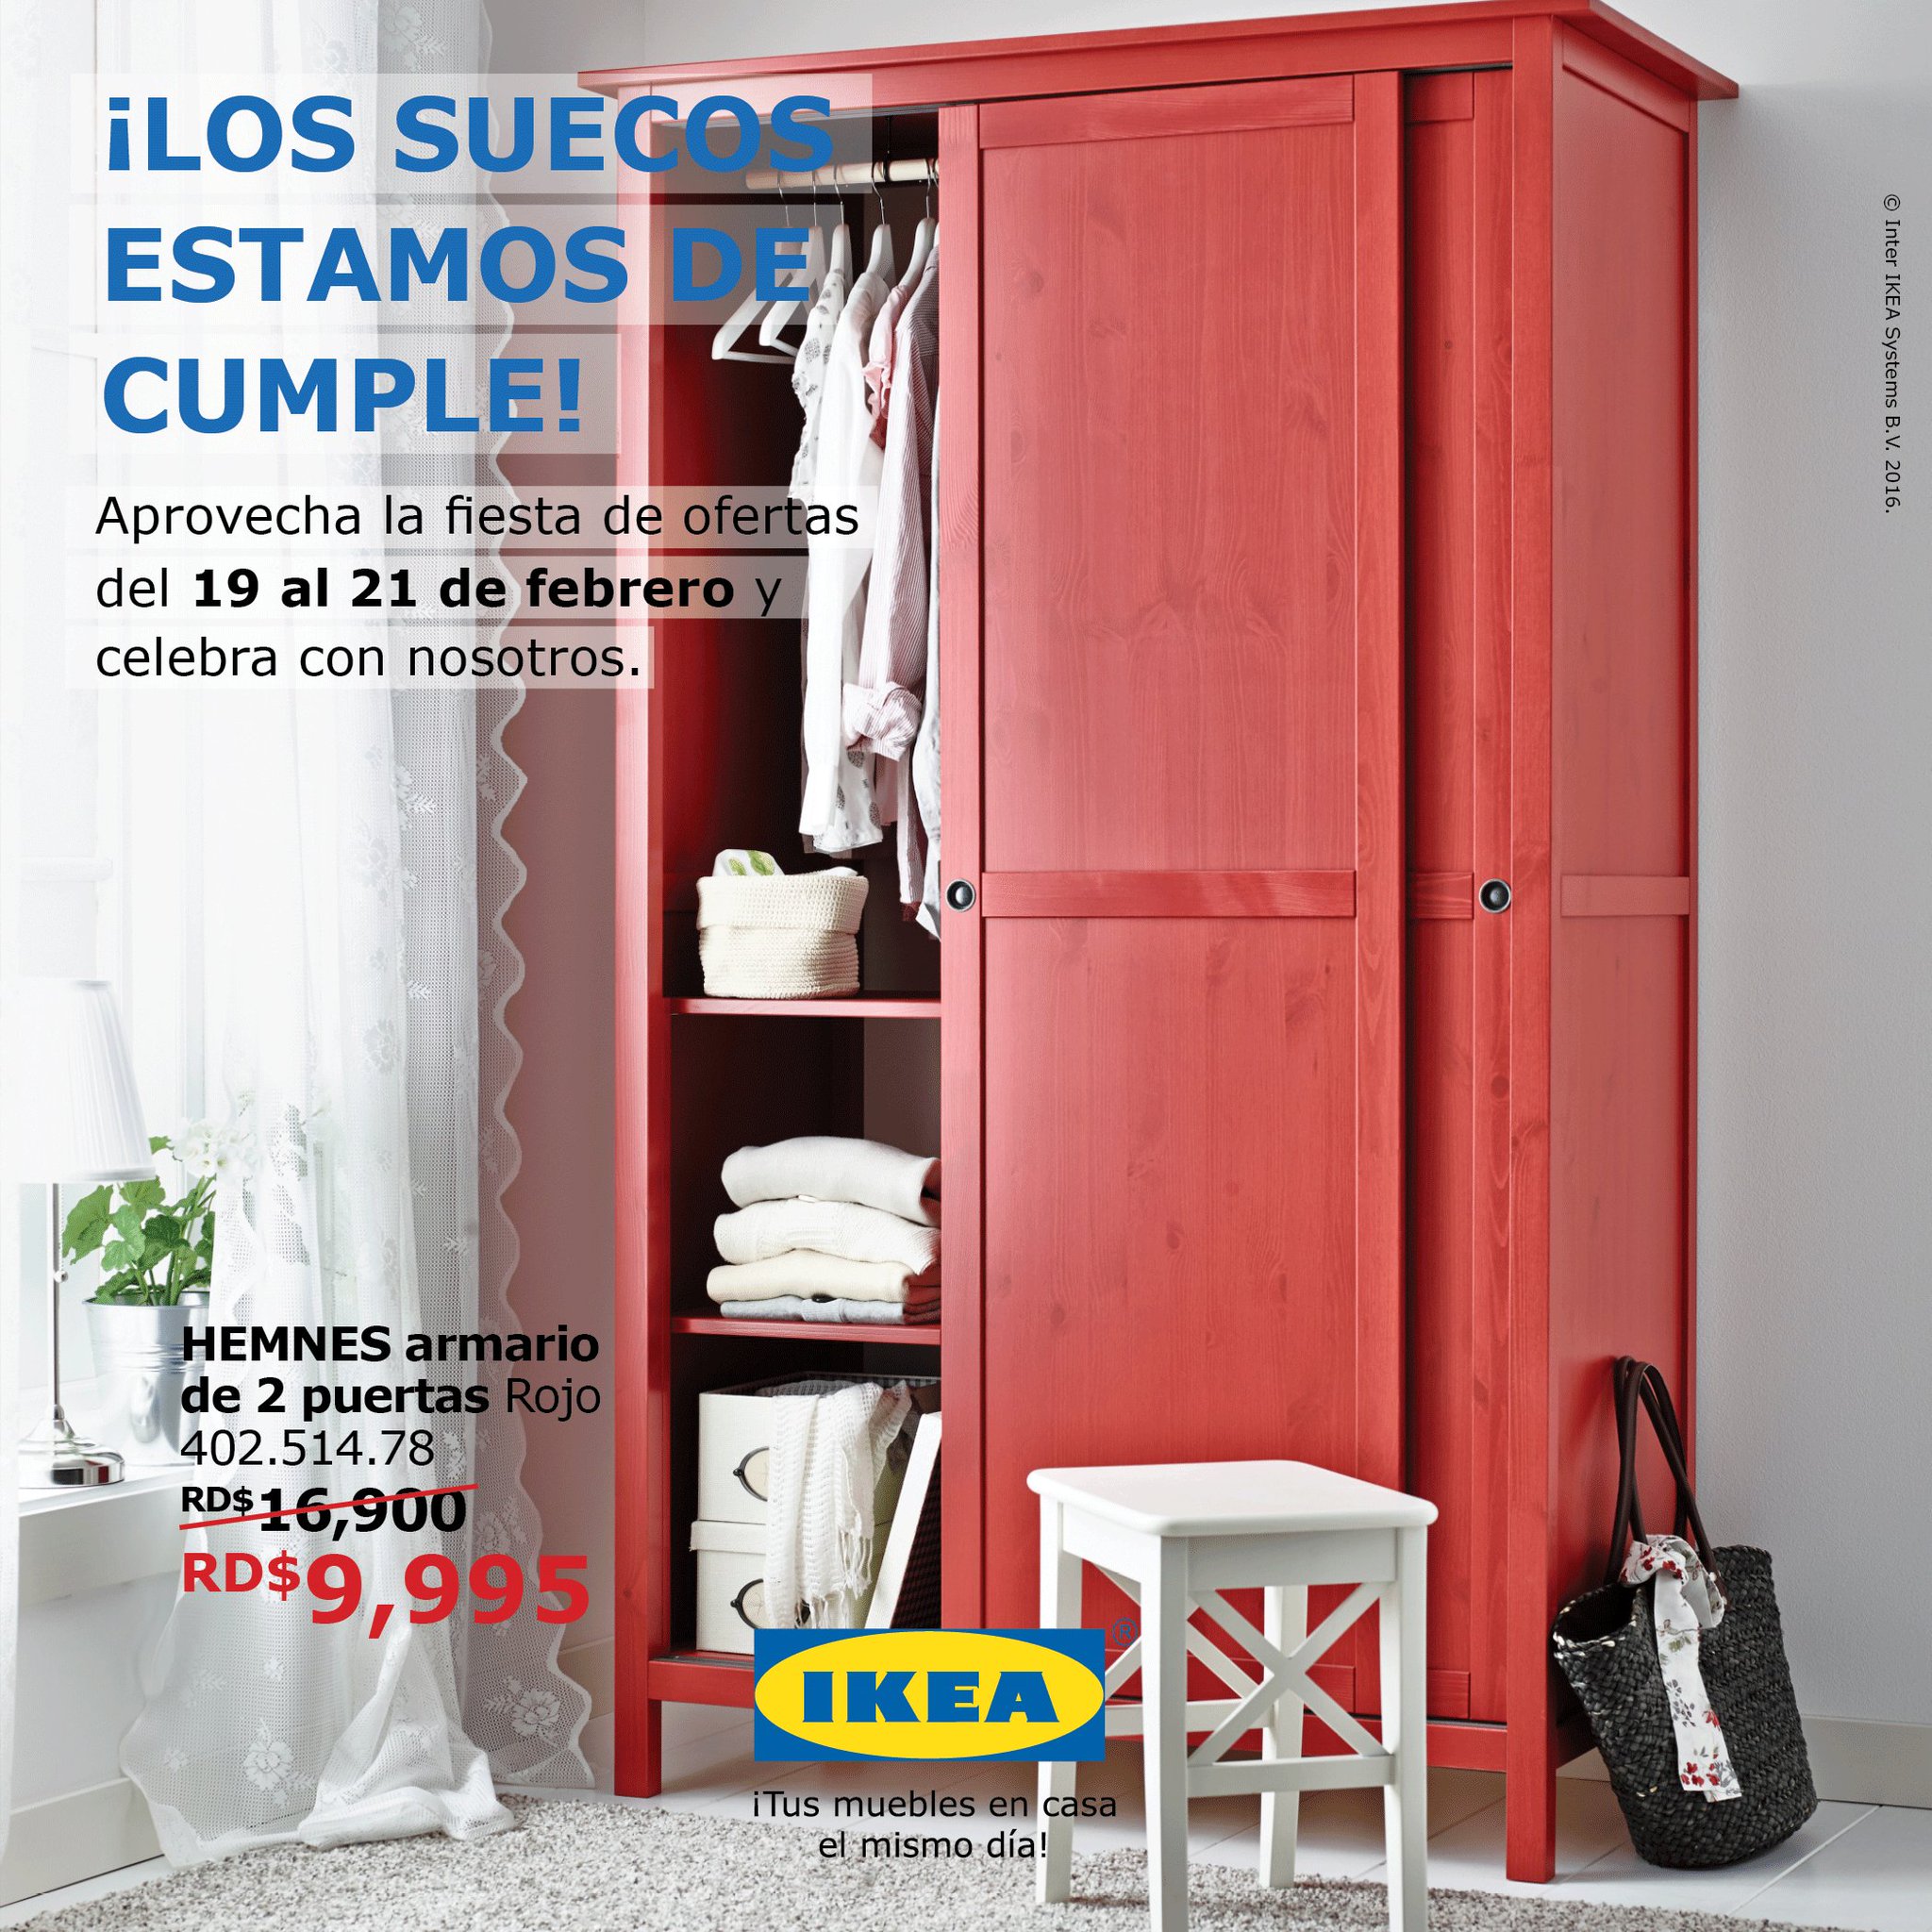 Elección frase nacionalismo IKEA Dominicana on Twitter: "¡Hoy es el último día! Aprovecha la oferta del  armario rojo HEMNES de 2 puertas. #AniversarioIKEA2016  https://t.co/cloKUj52Gd" / Twitter